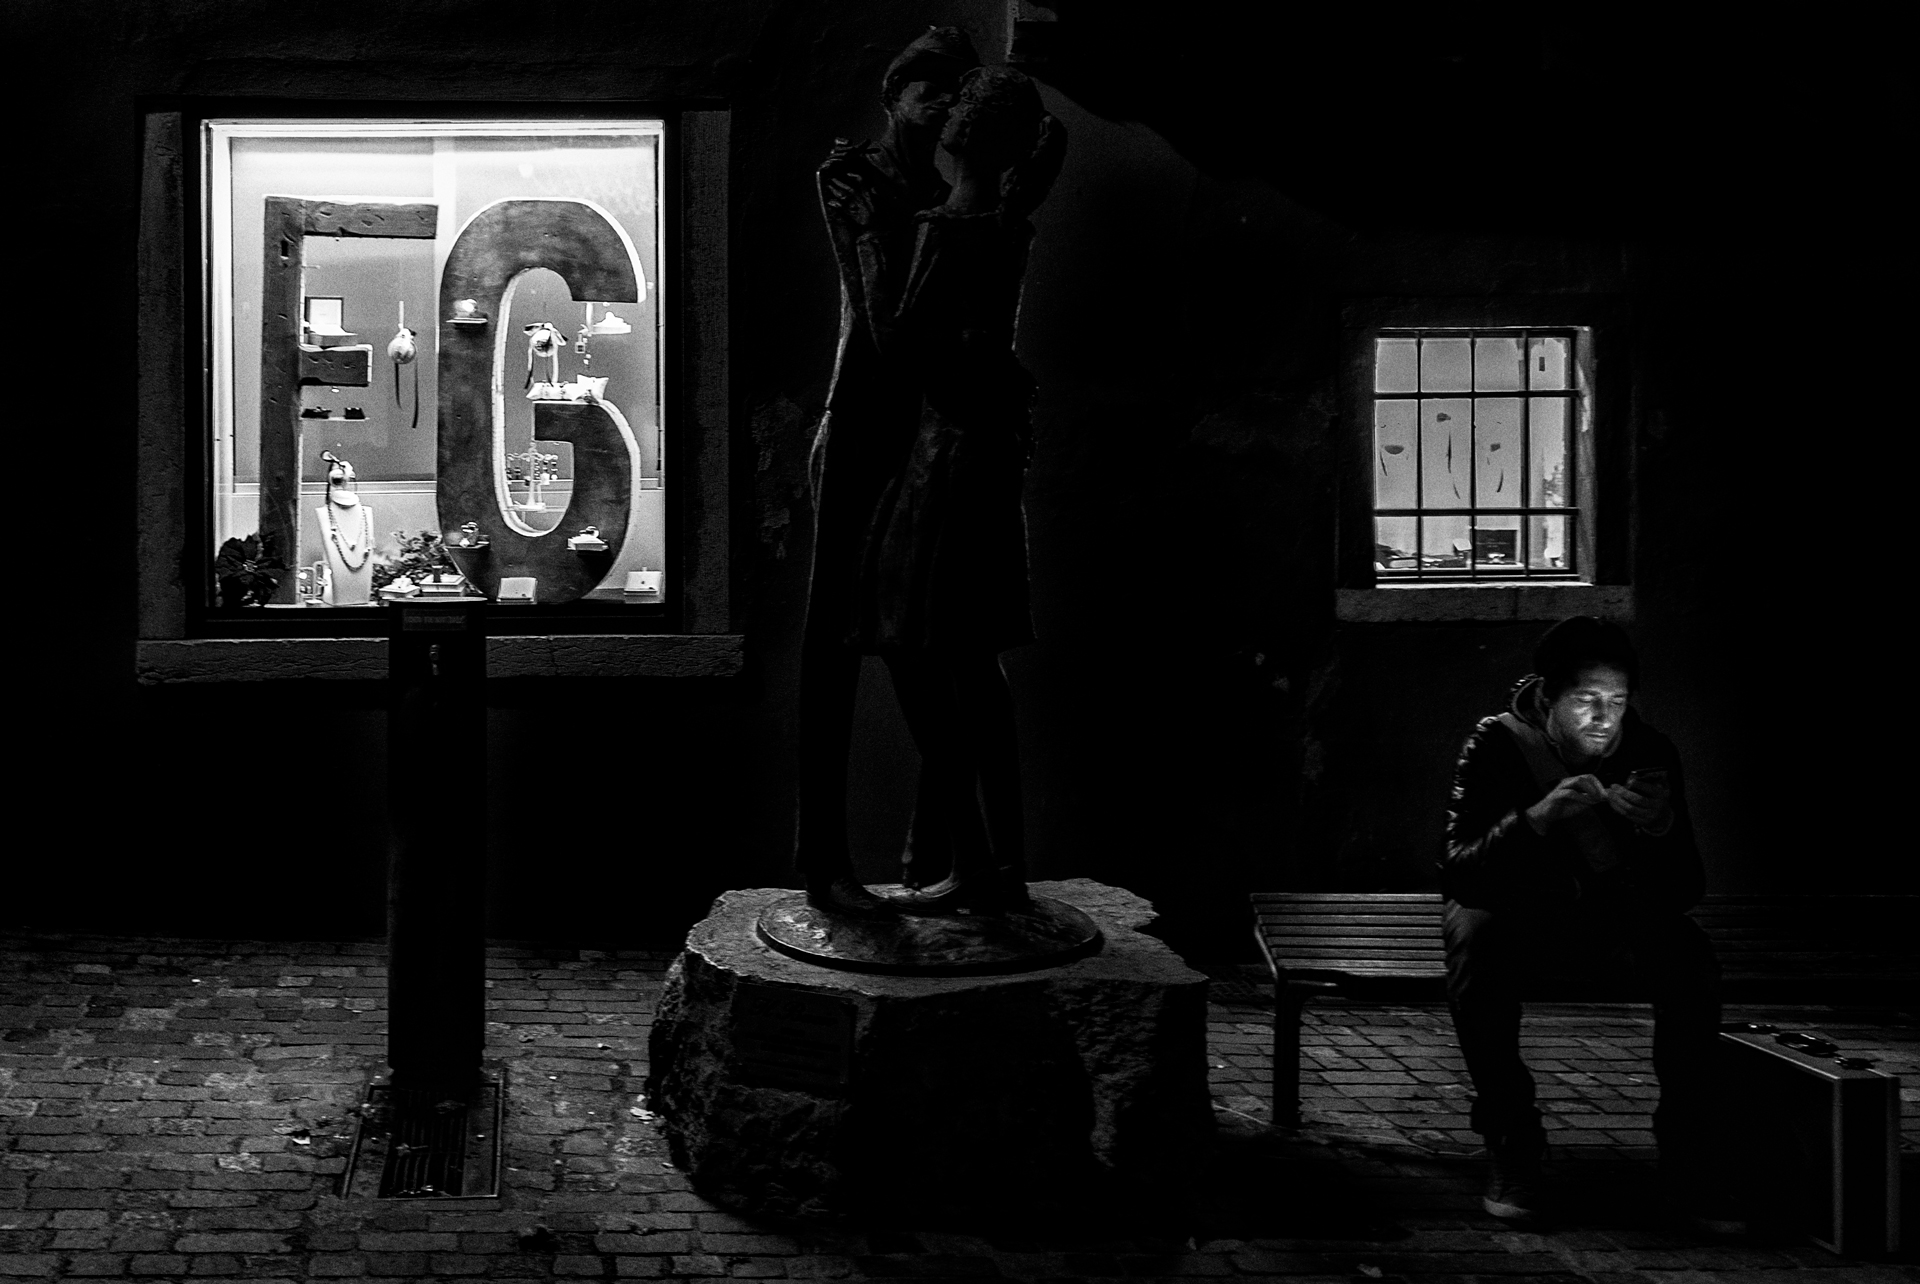 PPRIMA CLASS  – La notte, in un posto abitato, non lascia molto spazio al vedere i contorni delle cose, il fotografo ha scelto più punti luce, la vetrina che sparge la sua luce, anche se i passanti ormai non ci sono più, rendendo visibile i contorni di un